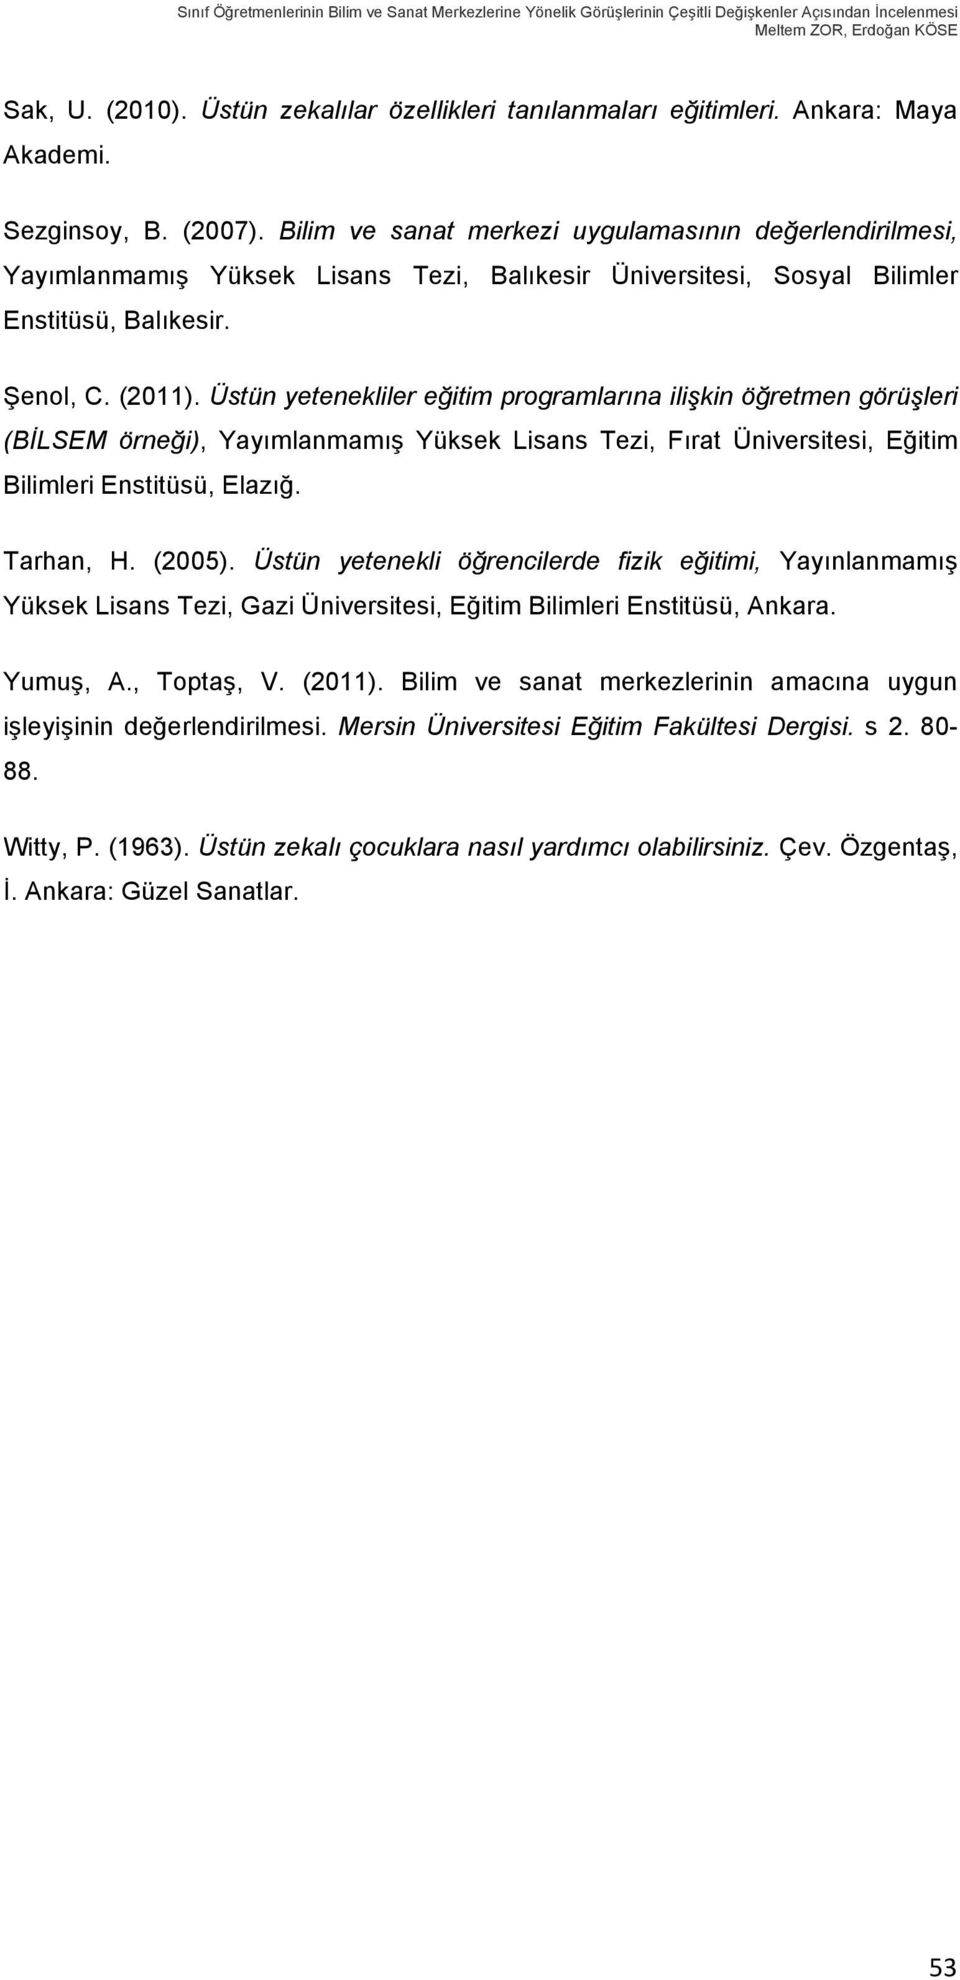 Bilim ve sanat merkezi uygulamasının değerlendirilmesi, Yayımlanmamış Yüksek Lisans Tezi, Balıkesir Üniversitesi, Sosyal Bilimler Enstitüsü, Balıkesir. Şenol, C. (2011).